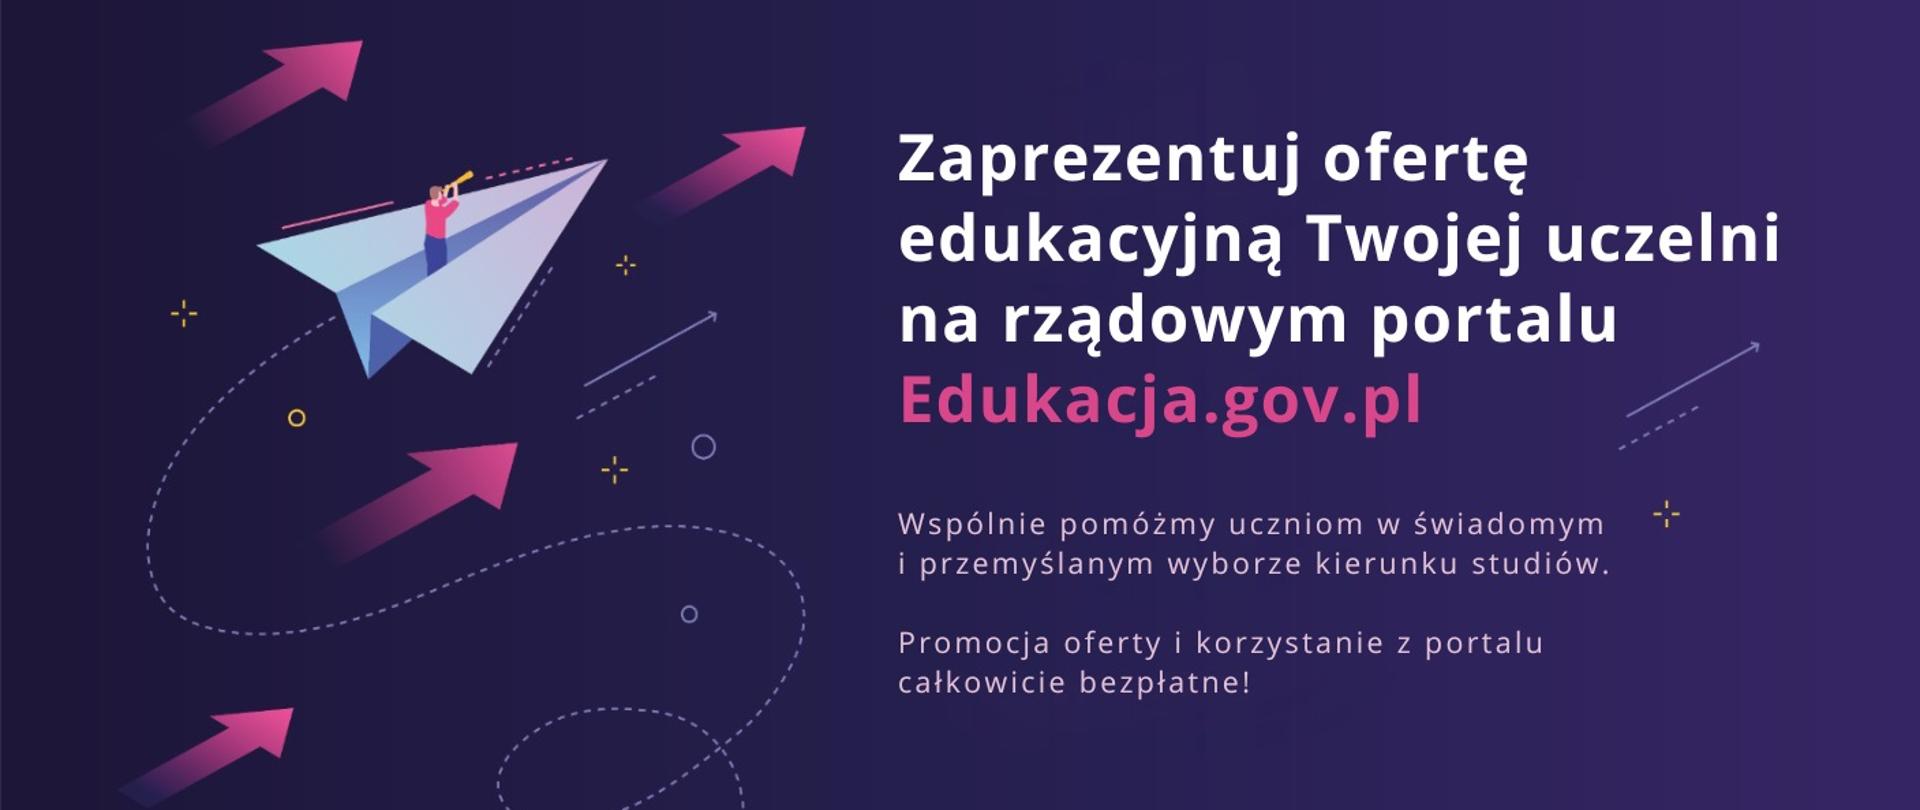 Grafika - na fioletowym tle napis Zaprezentuj ofertę edukacyjną Twojej uczelni na rządowym portalu Edukacja.gov.pl.